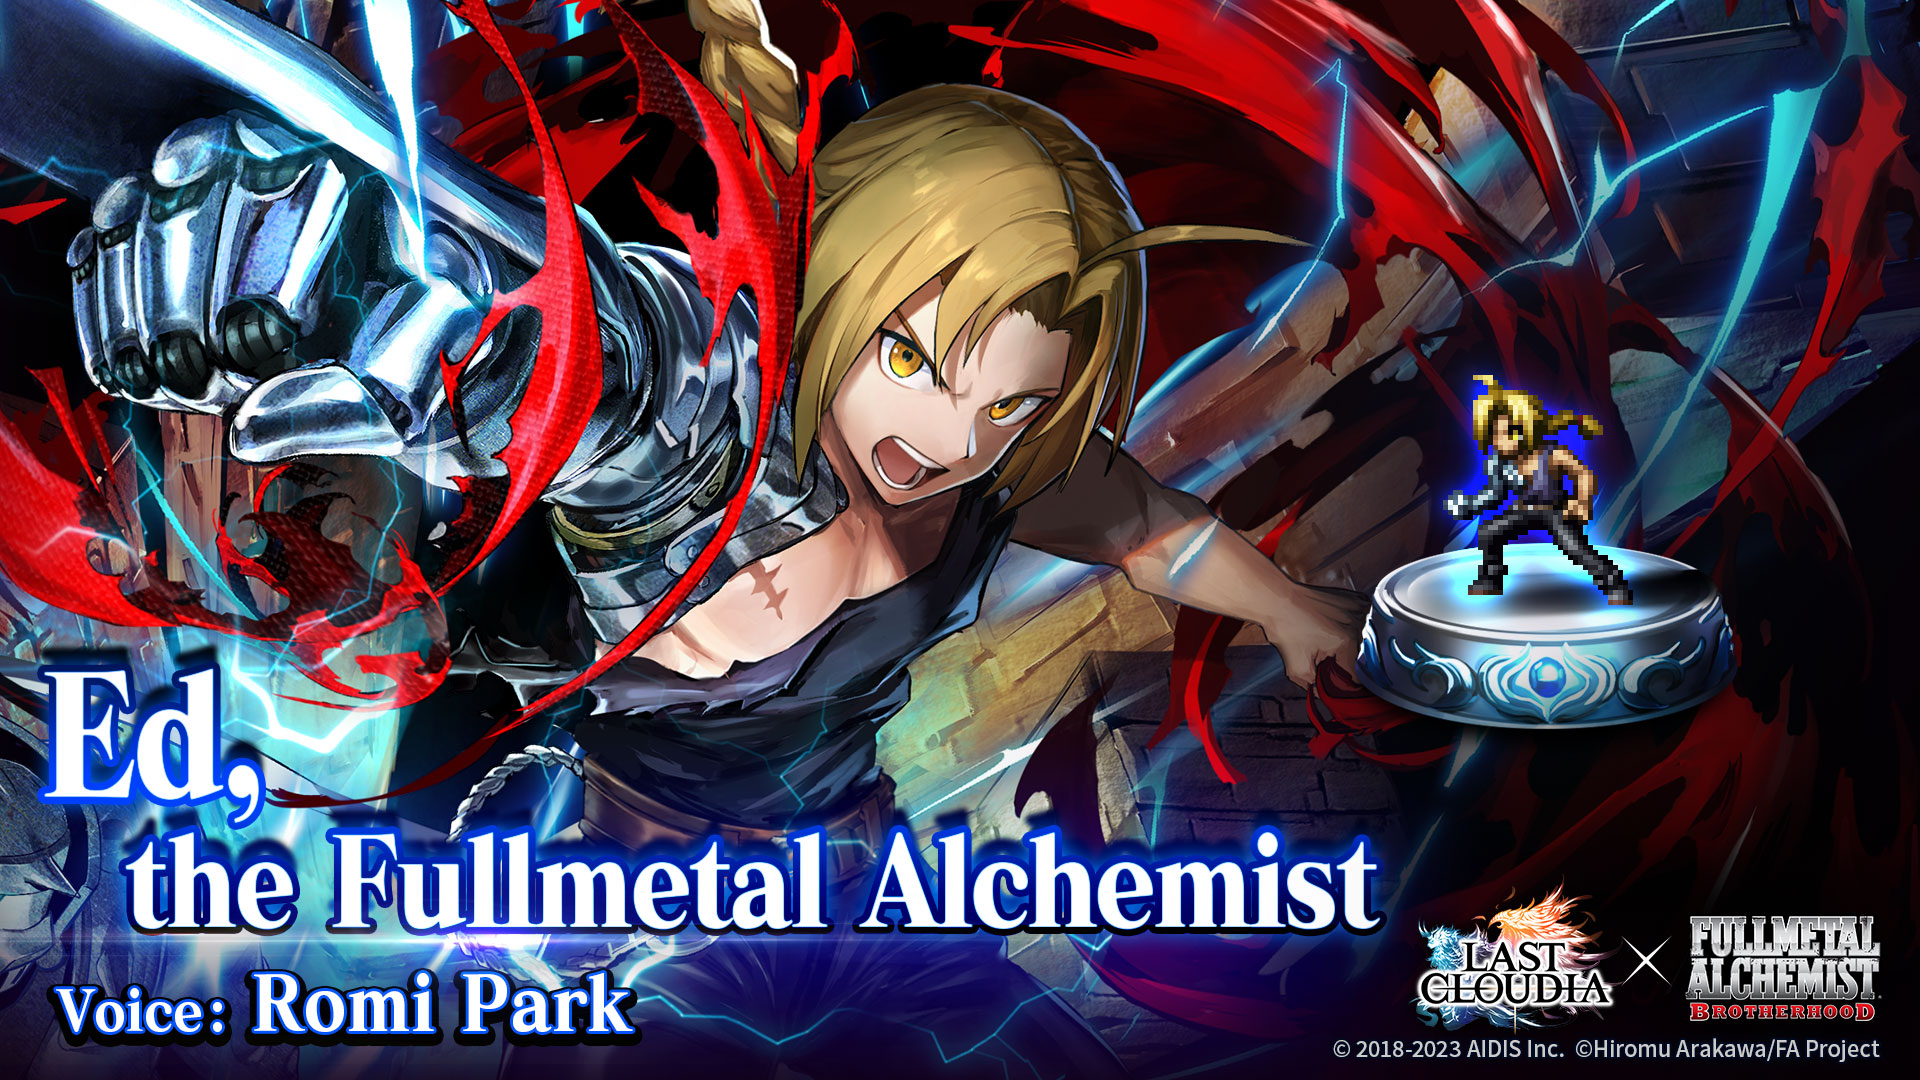 Fullmetal alchemist  Fullmetal alchemist, Alchemist, Fullmetal alchemist  brotherhood